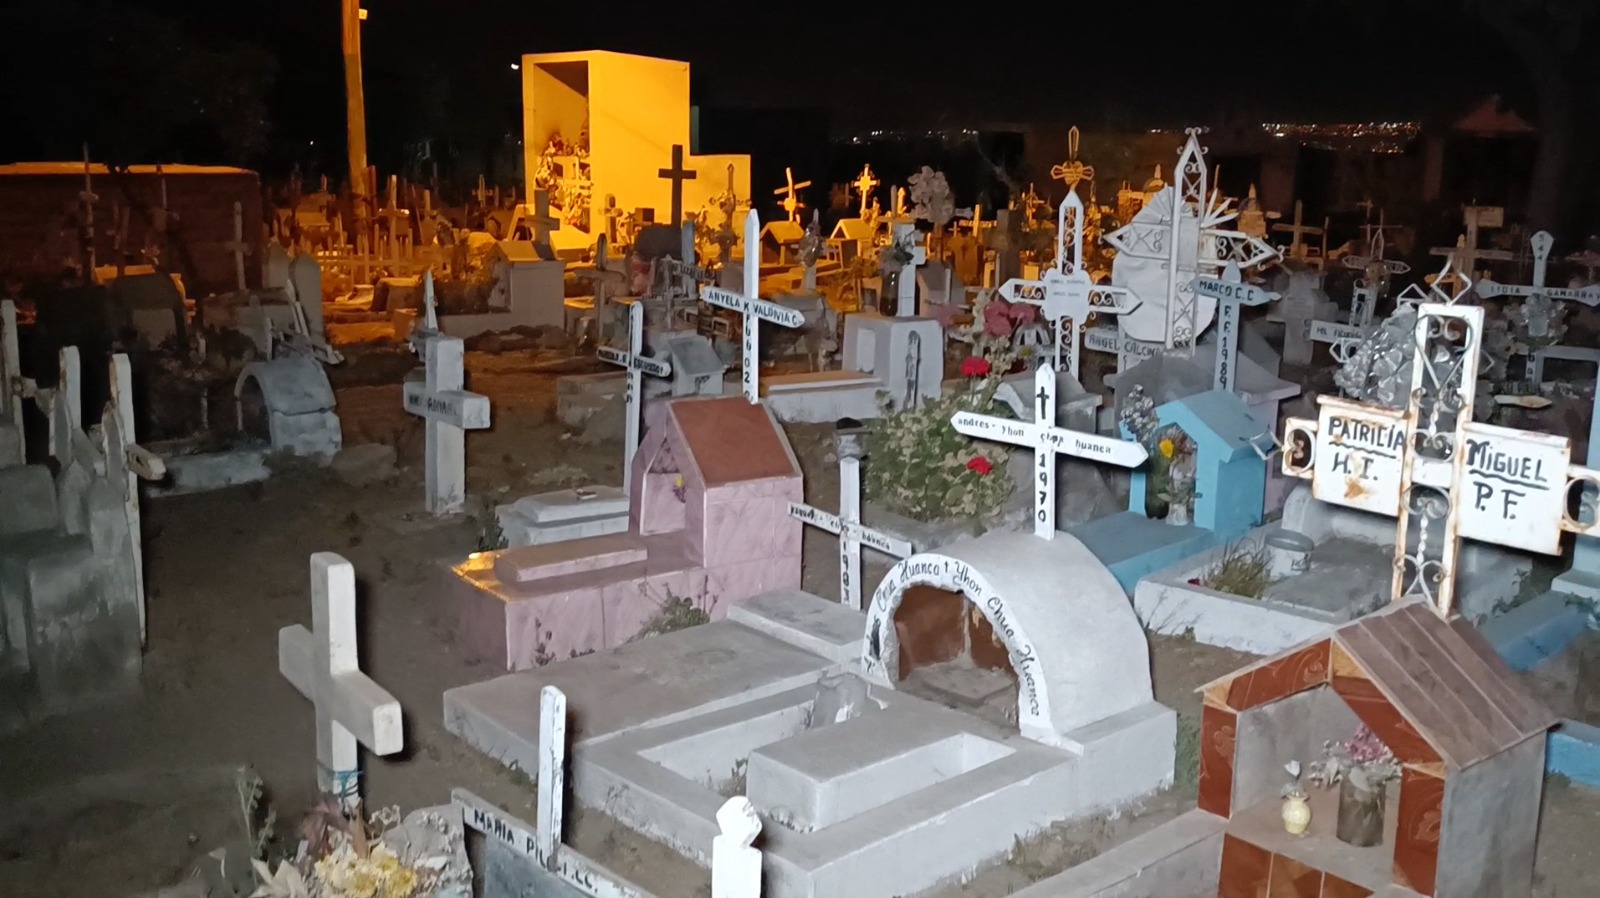 El 25 y 26 de agosto se realizará “Tour Paranormal” se realizará en cementerio de Paucarpata